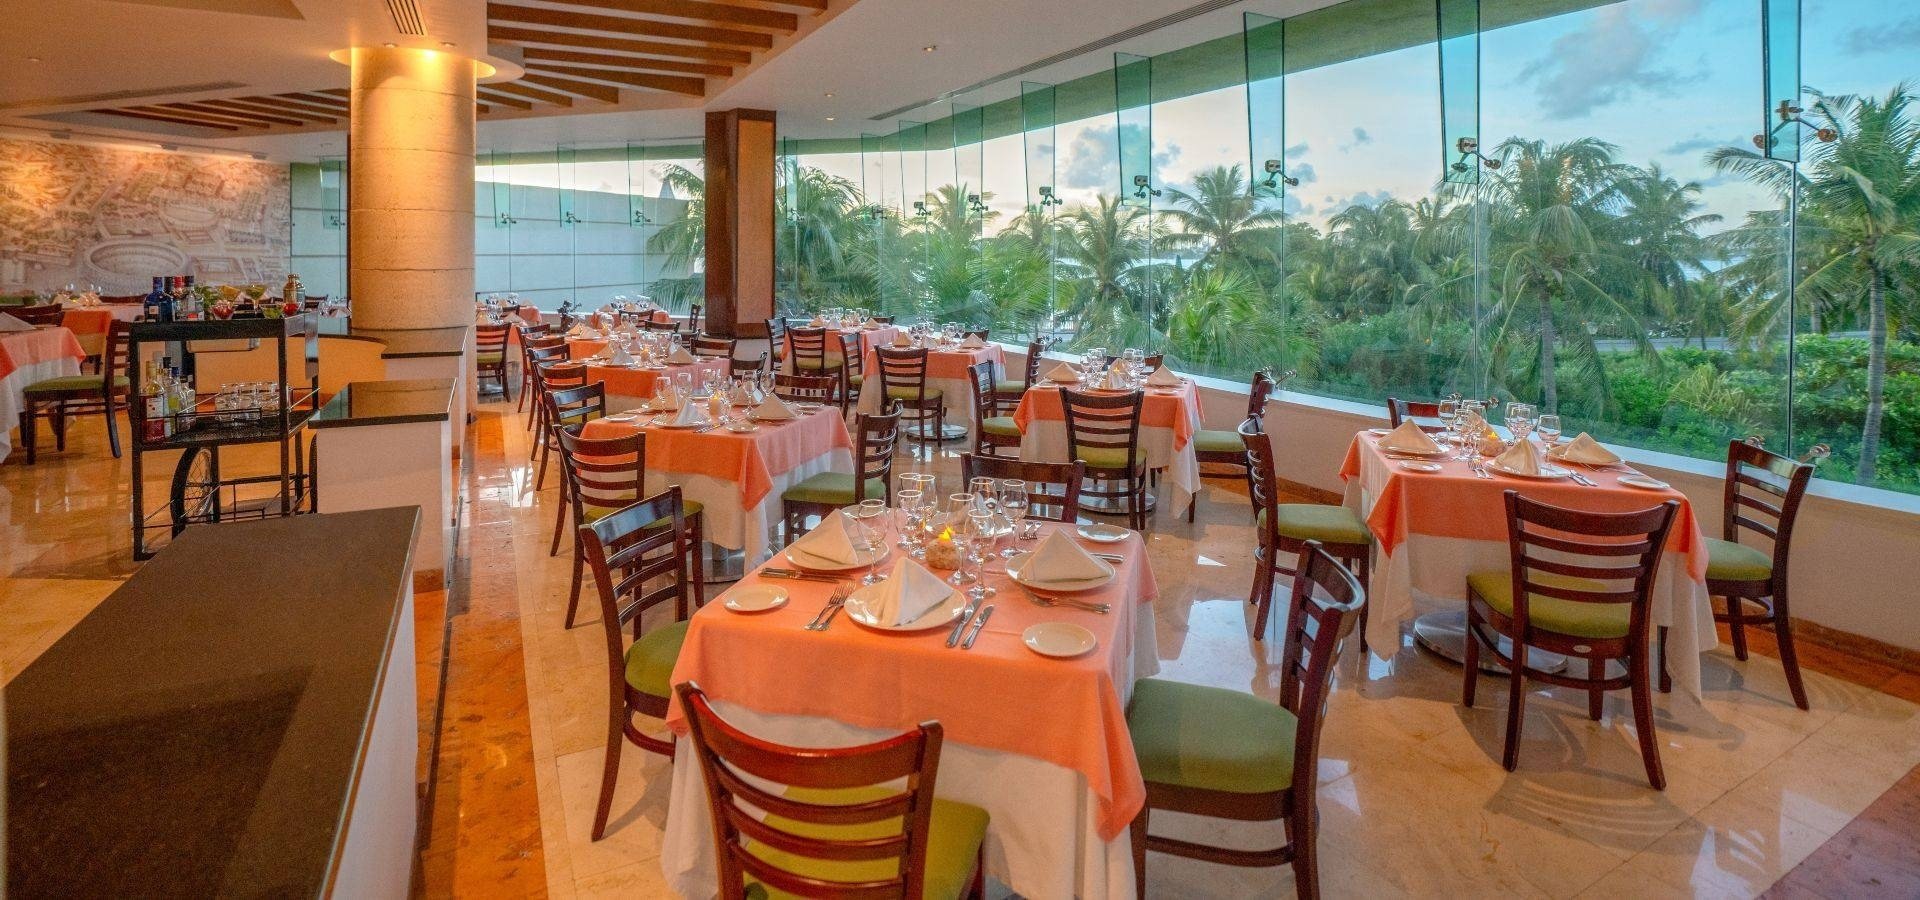 El Mirador Restaurant a la carte Italian dishes at Park Royal Grand Cancun